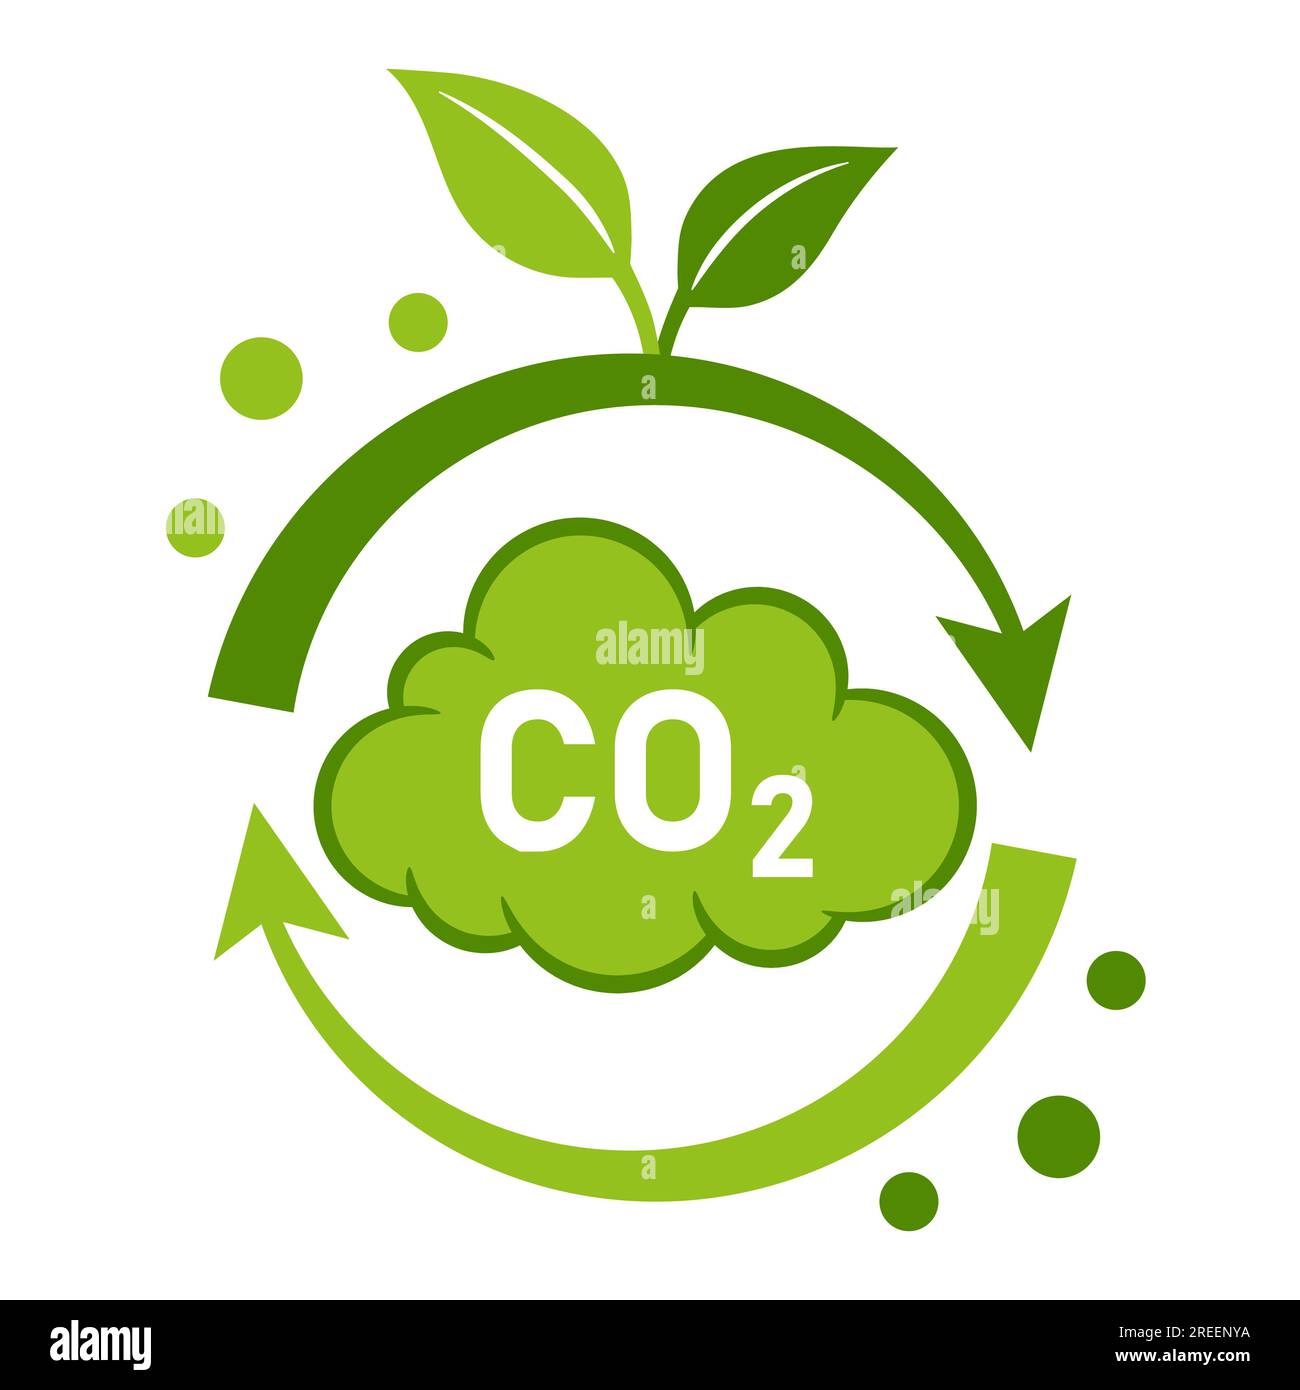 Recyclage du CO2, réduction des émissions de dioxyde de carbone, neutre en gaz à effet de serre, cycle carbonique dans les plantes vertes icône. Nuage de fumée. Faible pollution atmosphérique. Vecteur Illustration de Vecteur